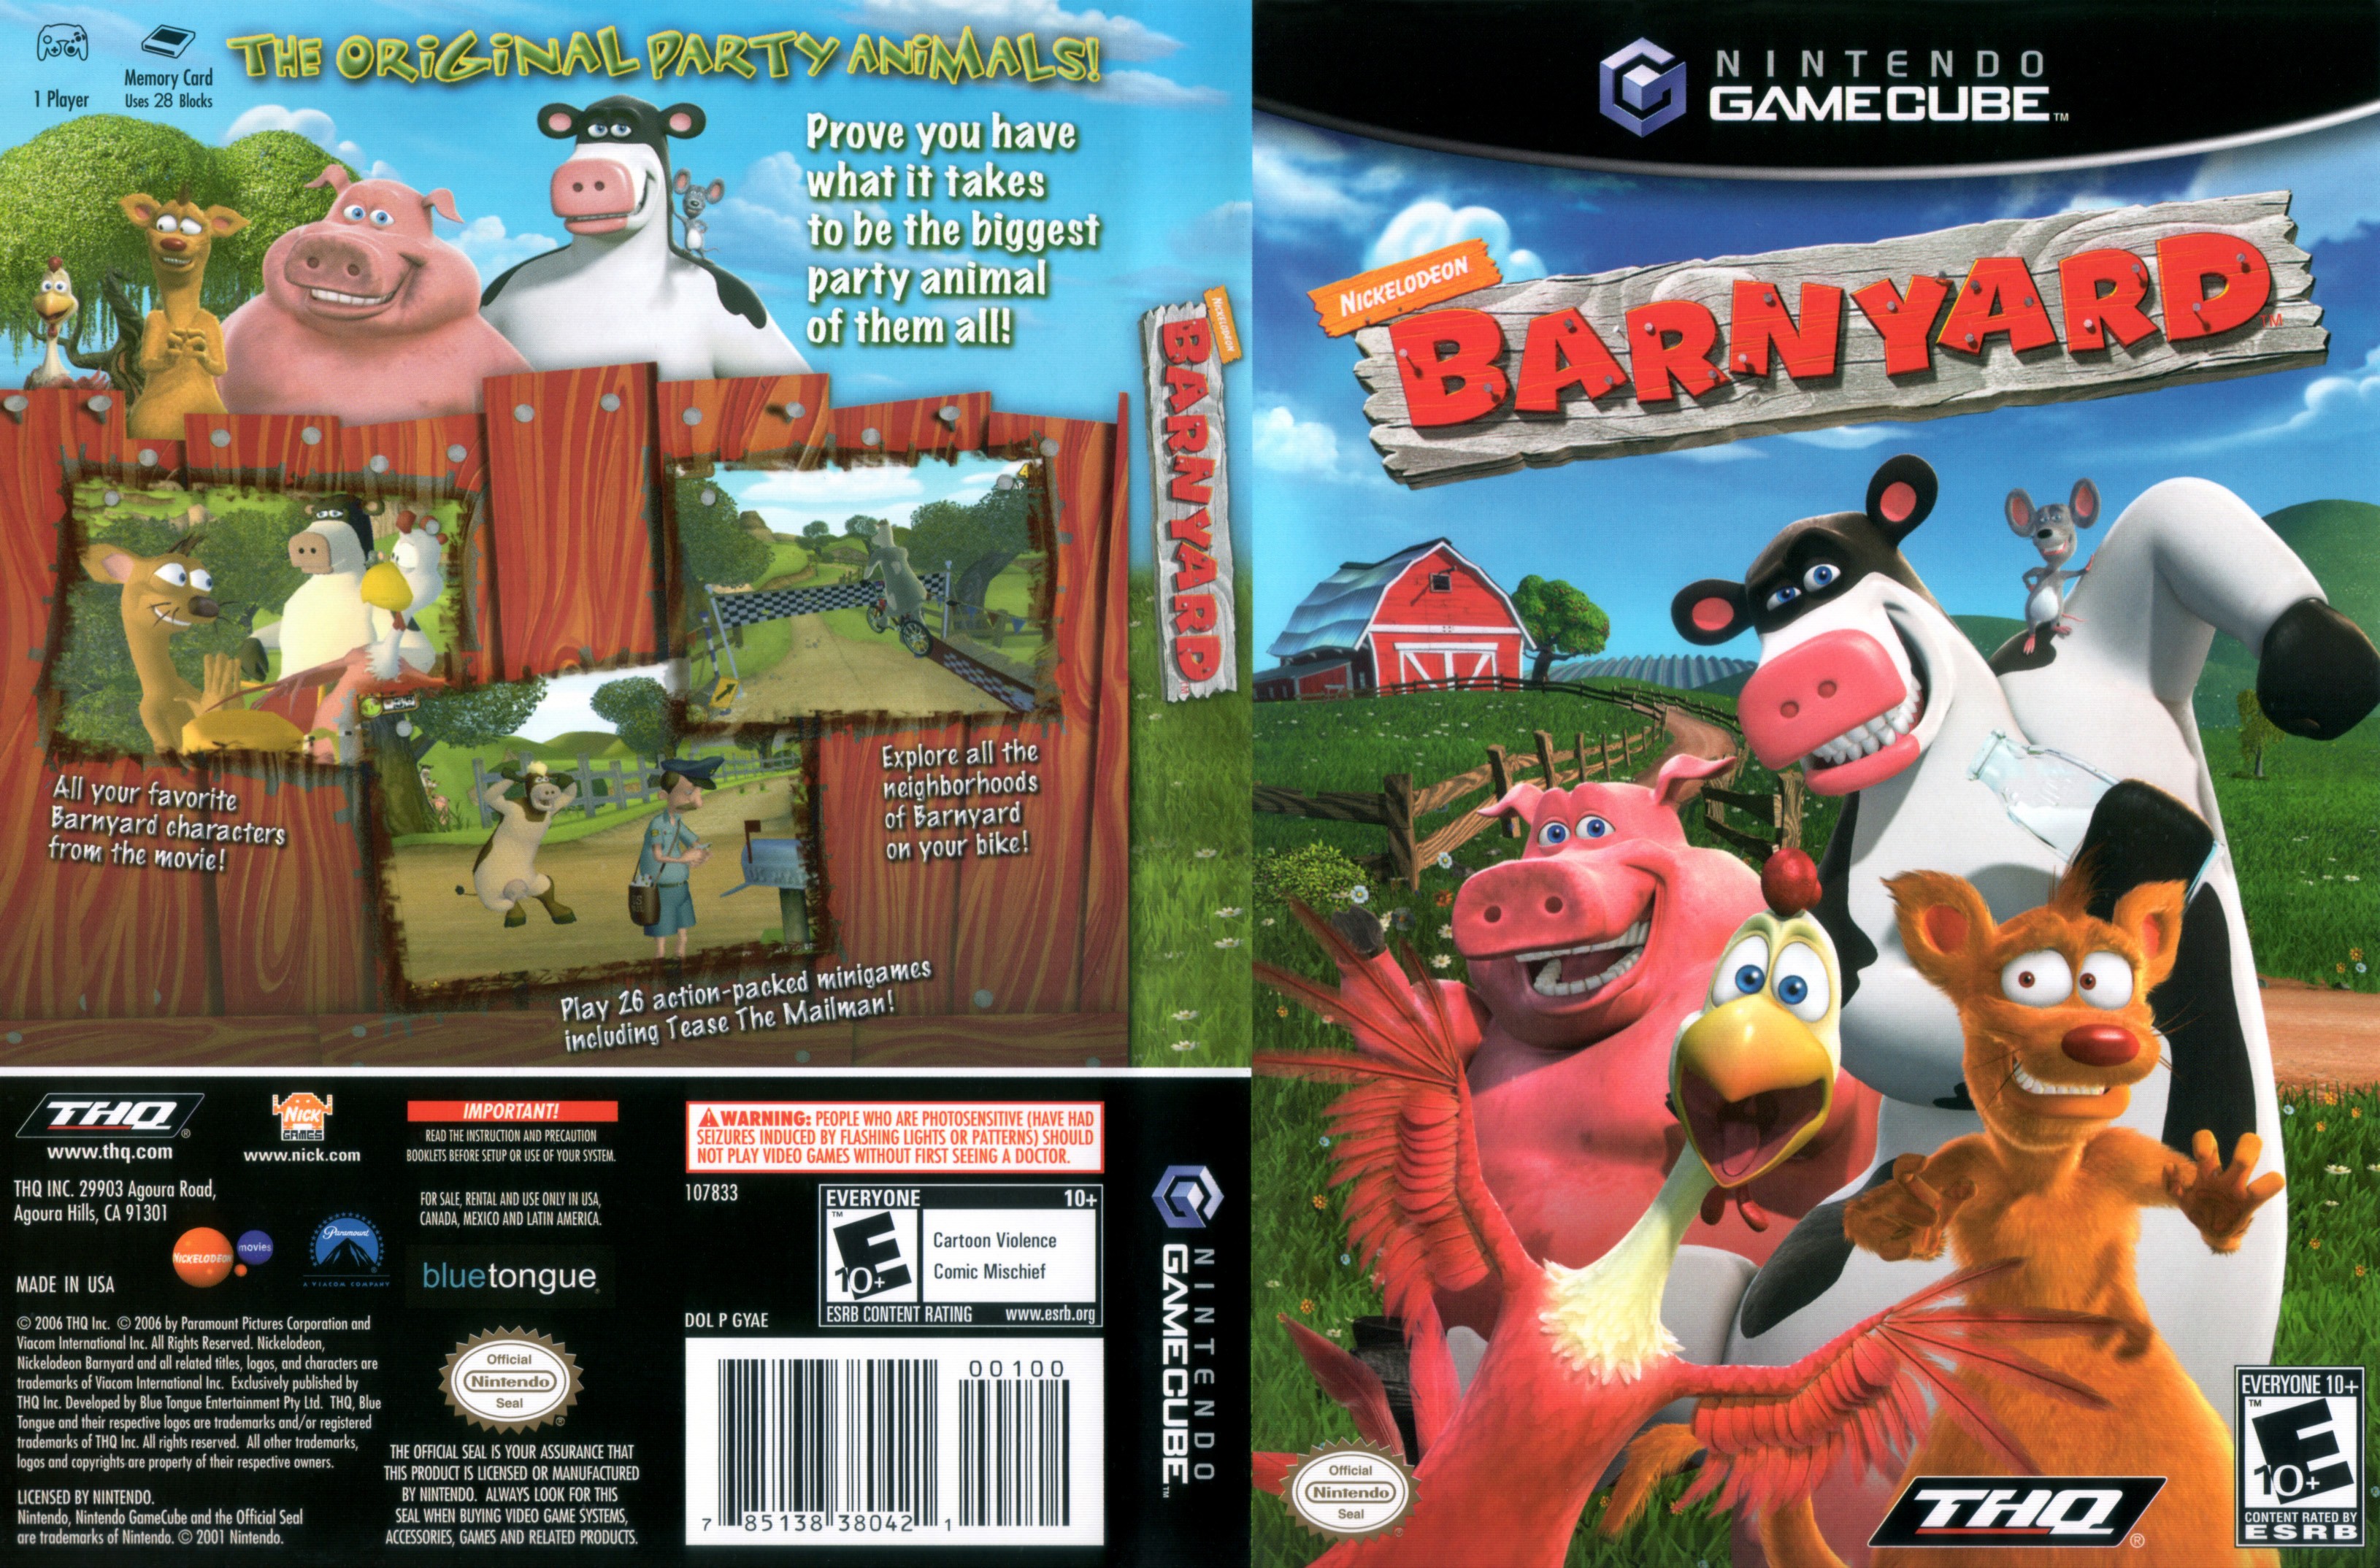 barnyard game download